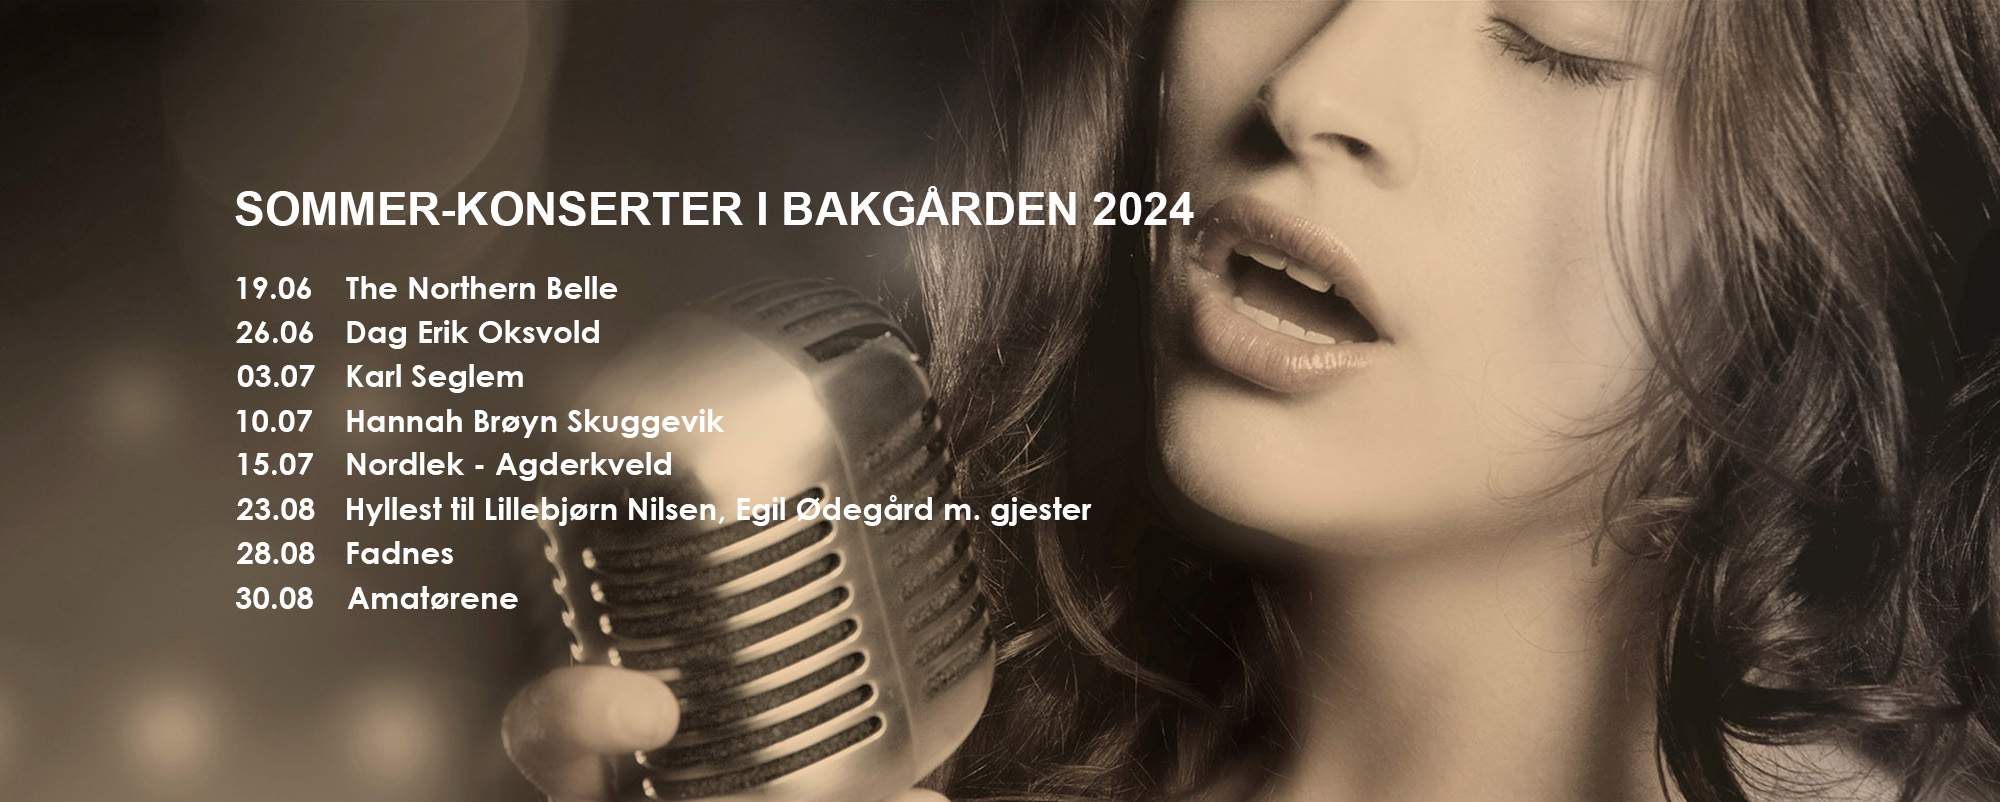 Sommerprogram 2024, med sangerinne i bakgrunnen.